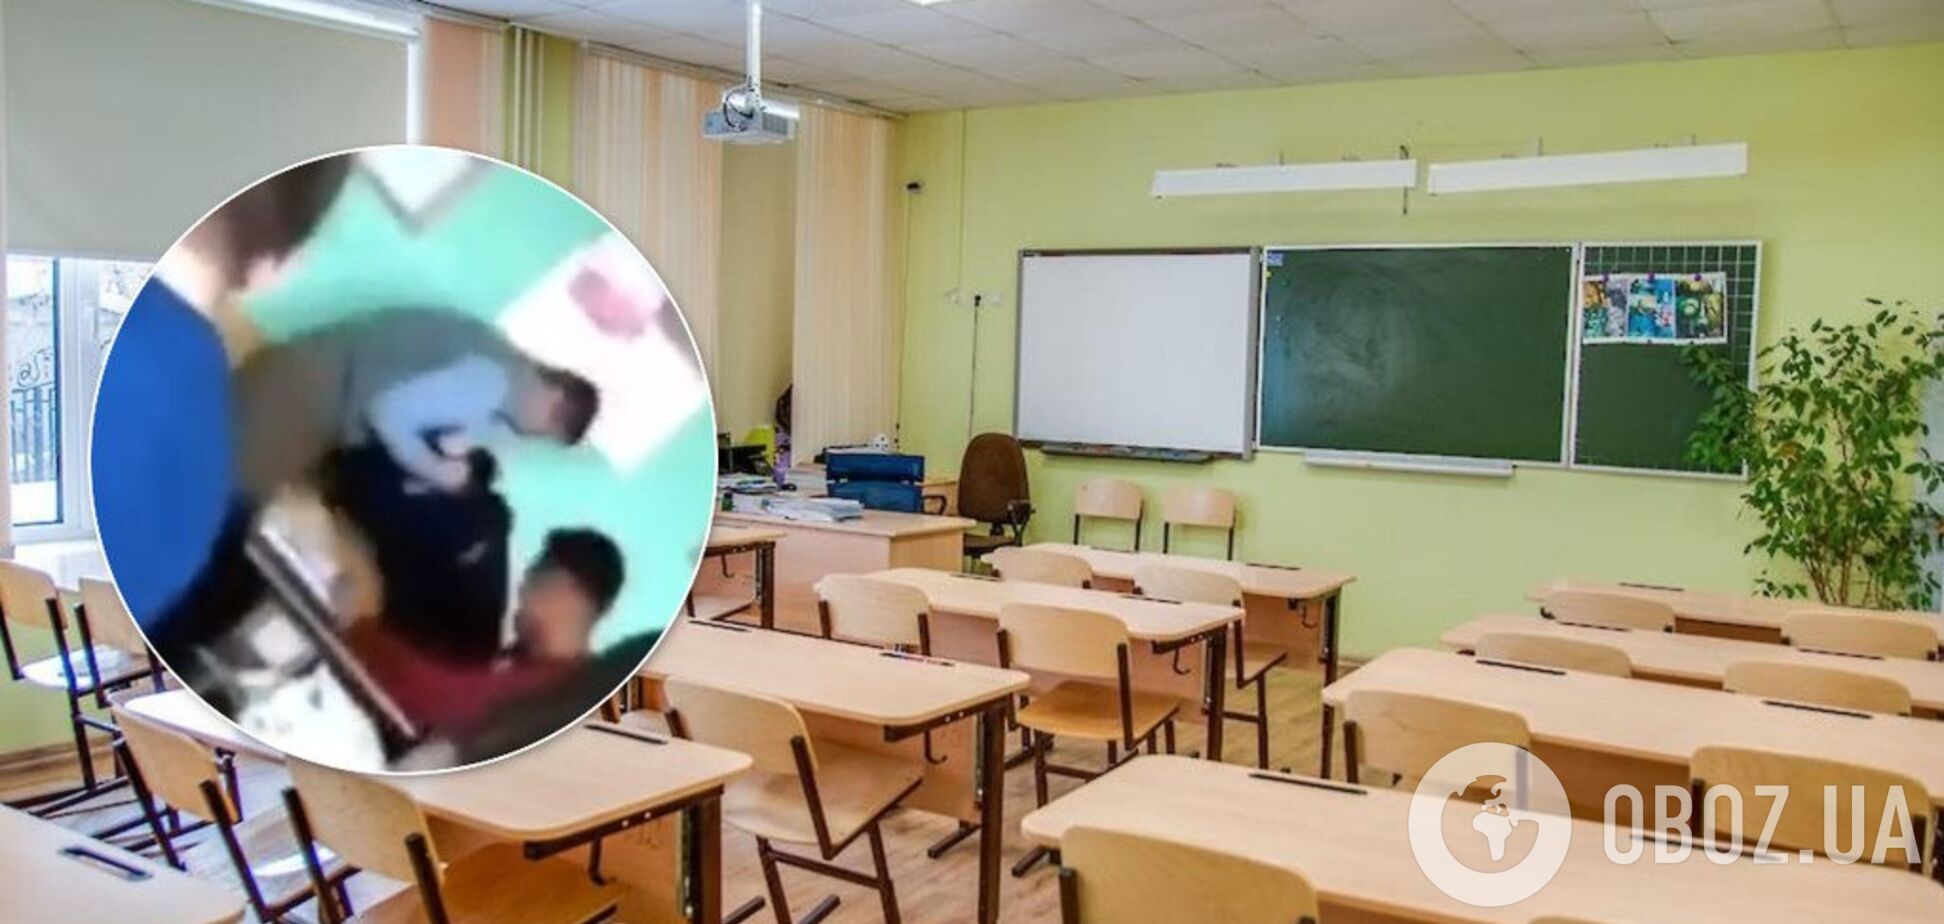 'Бив головою об стіл': на Буковині вчитель покарав старшокласника за погану поведінку